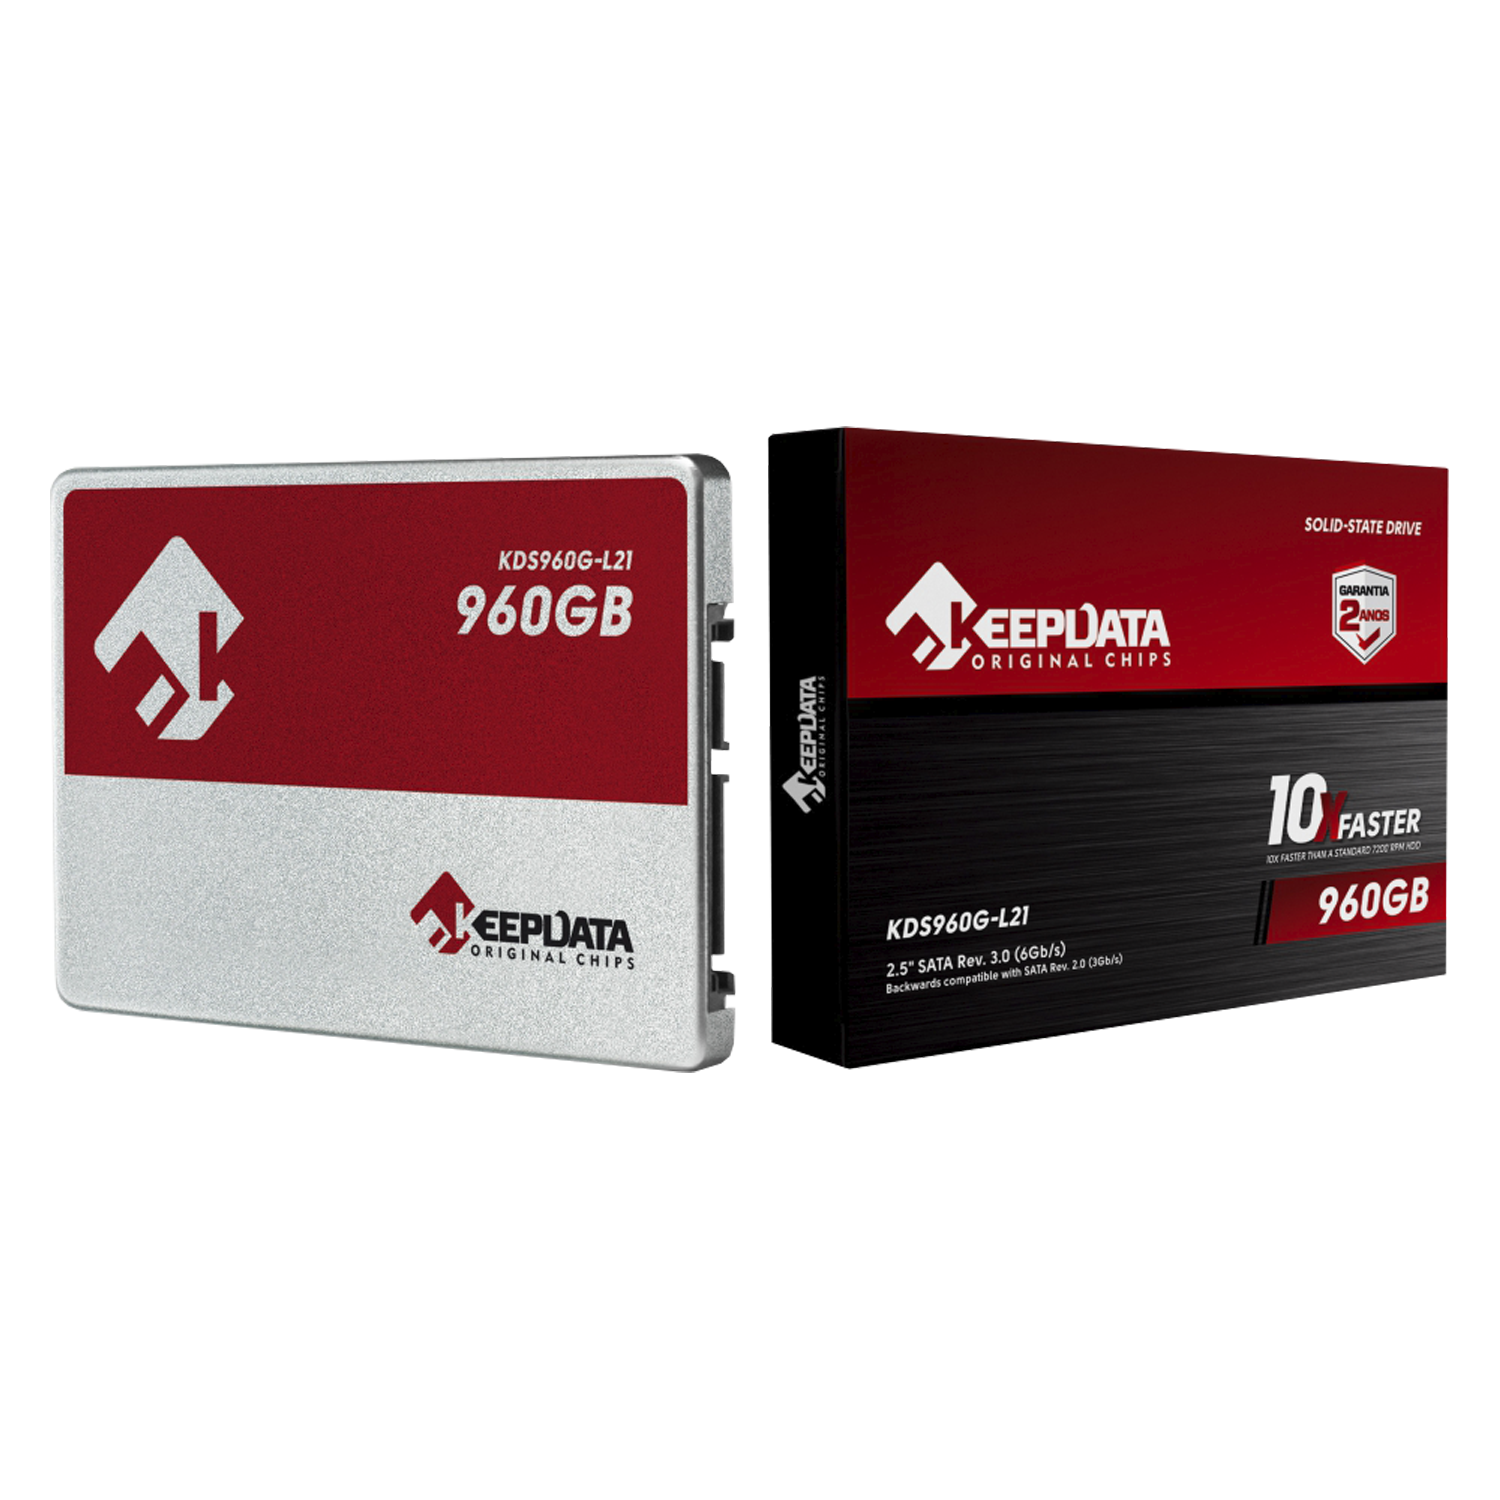 SSD Keepdata 960GB 2.5" SATA 3 - KDS960G-L21